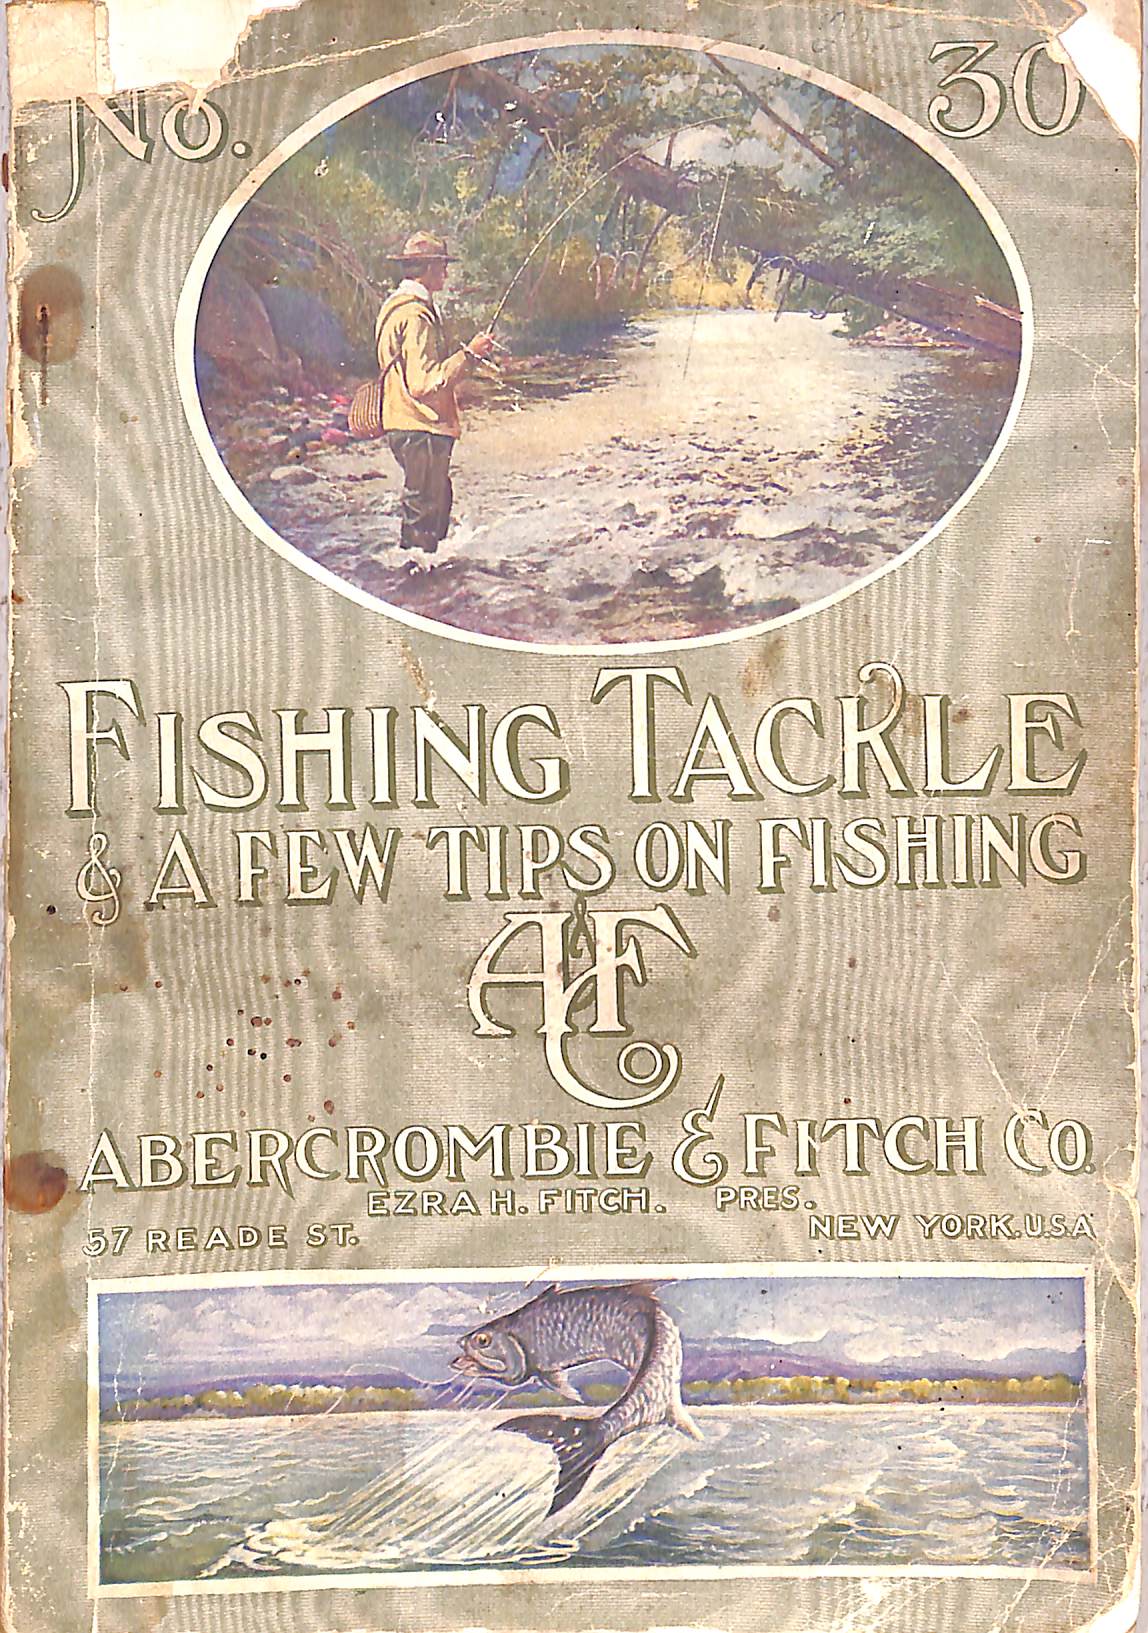 Edward Vom Hofe Fine Fishing Tackle (catalog)